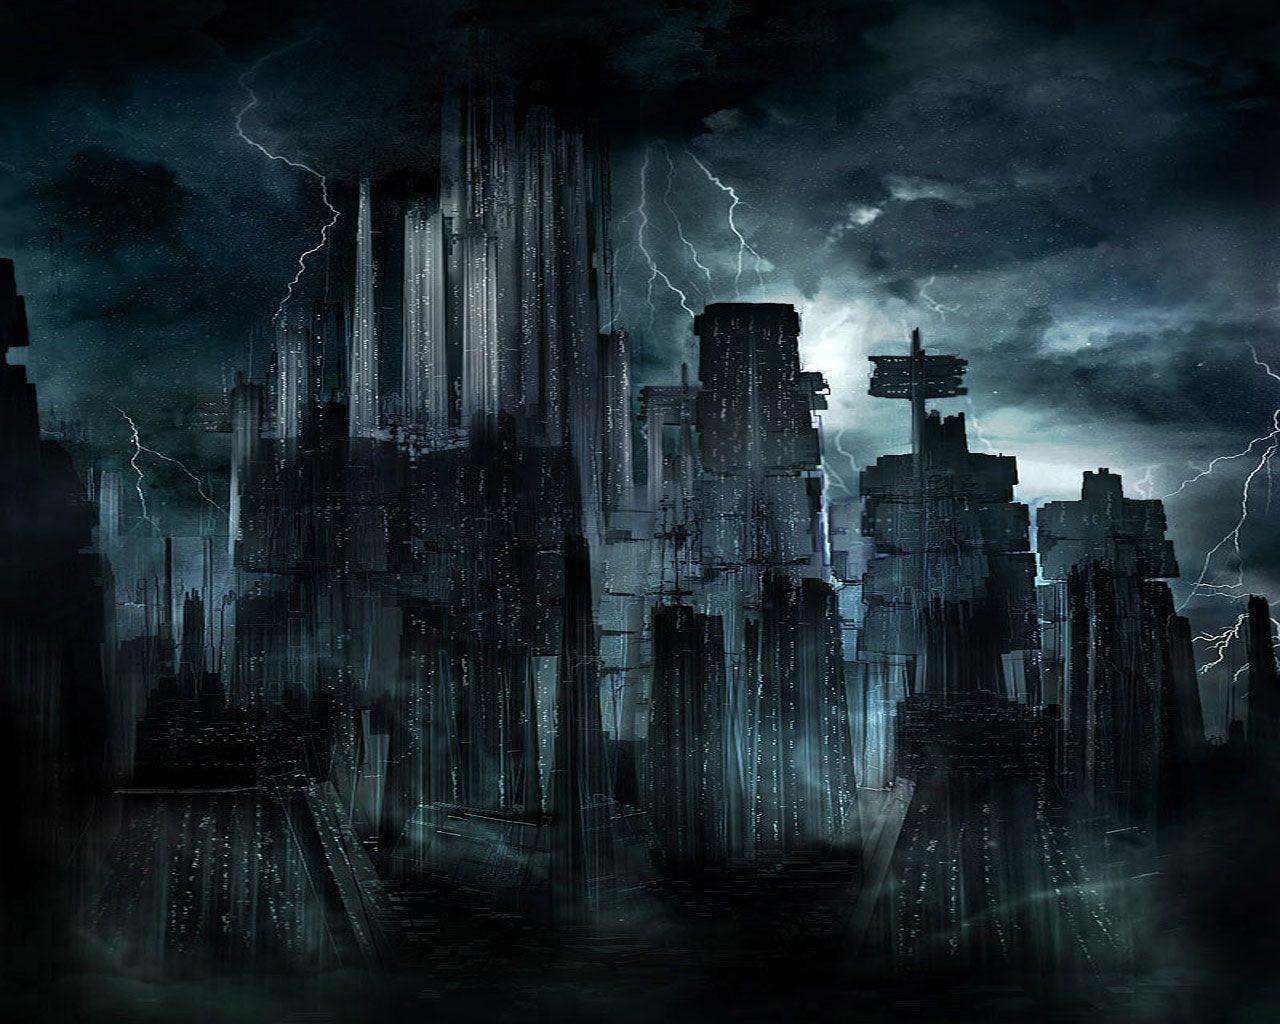 The Dark City wallpaper from Dark wallpaper